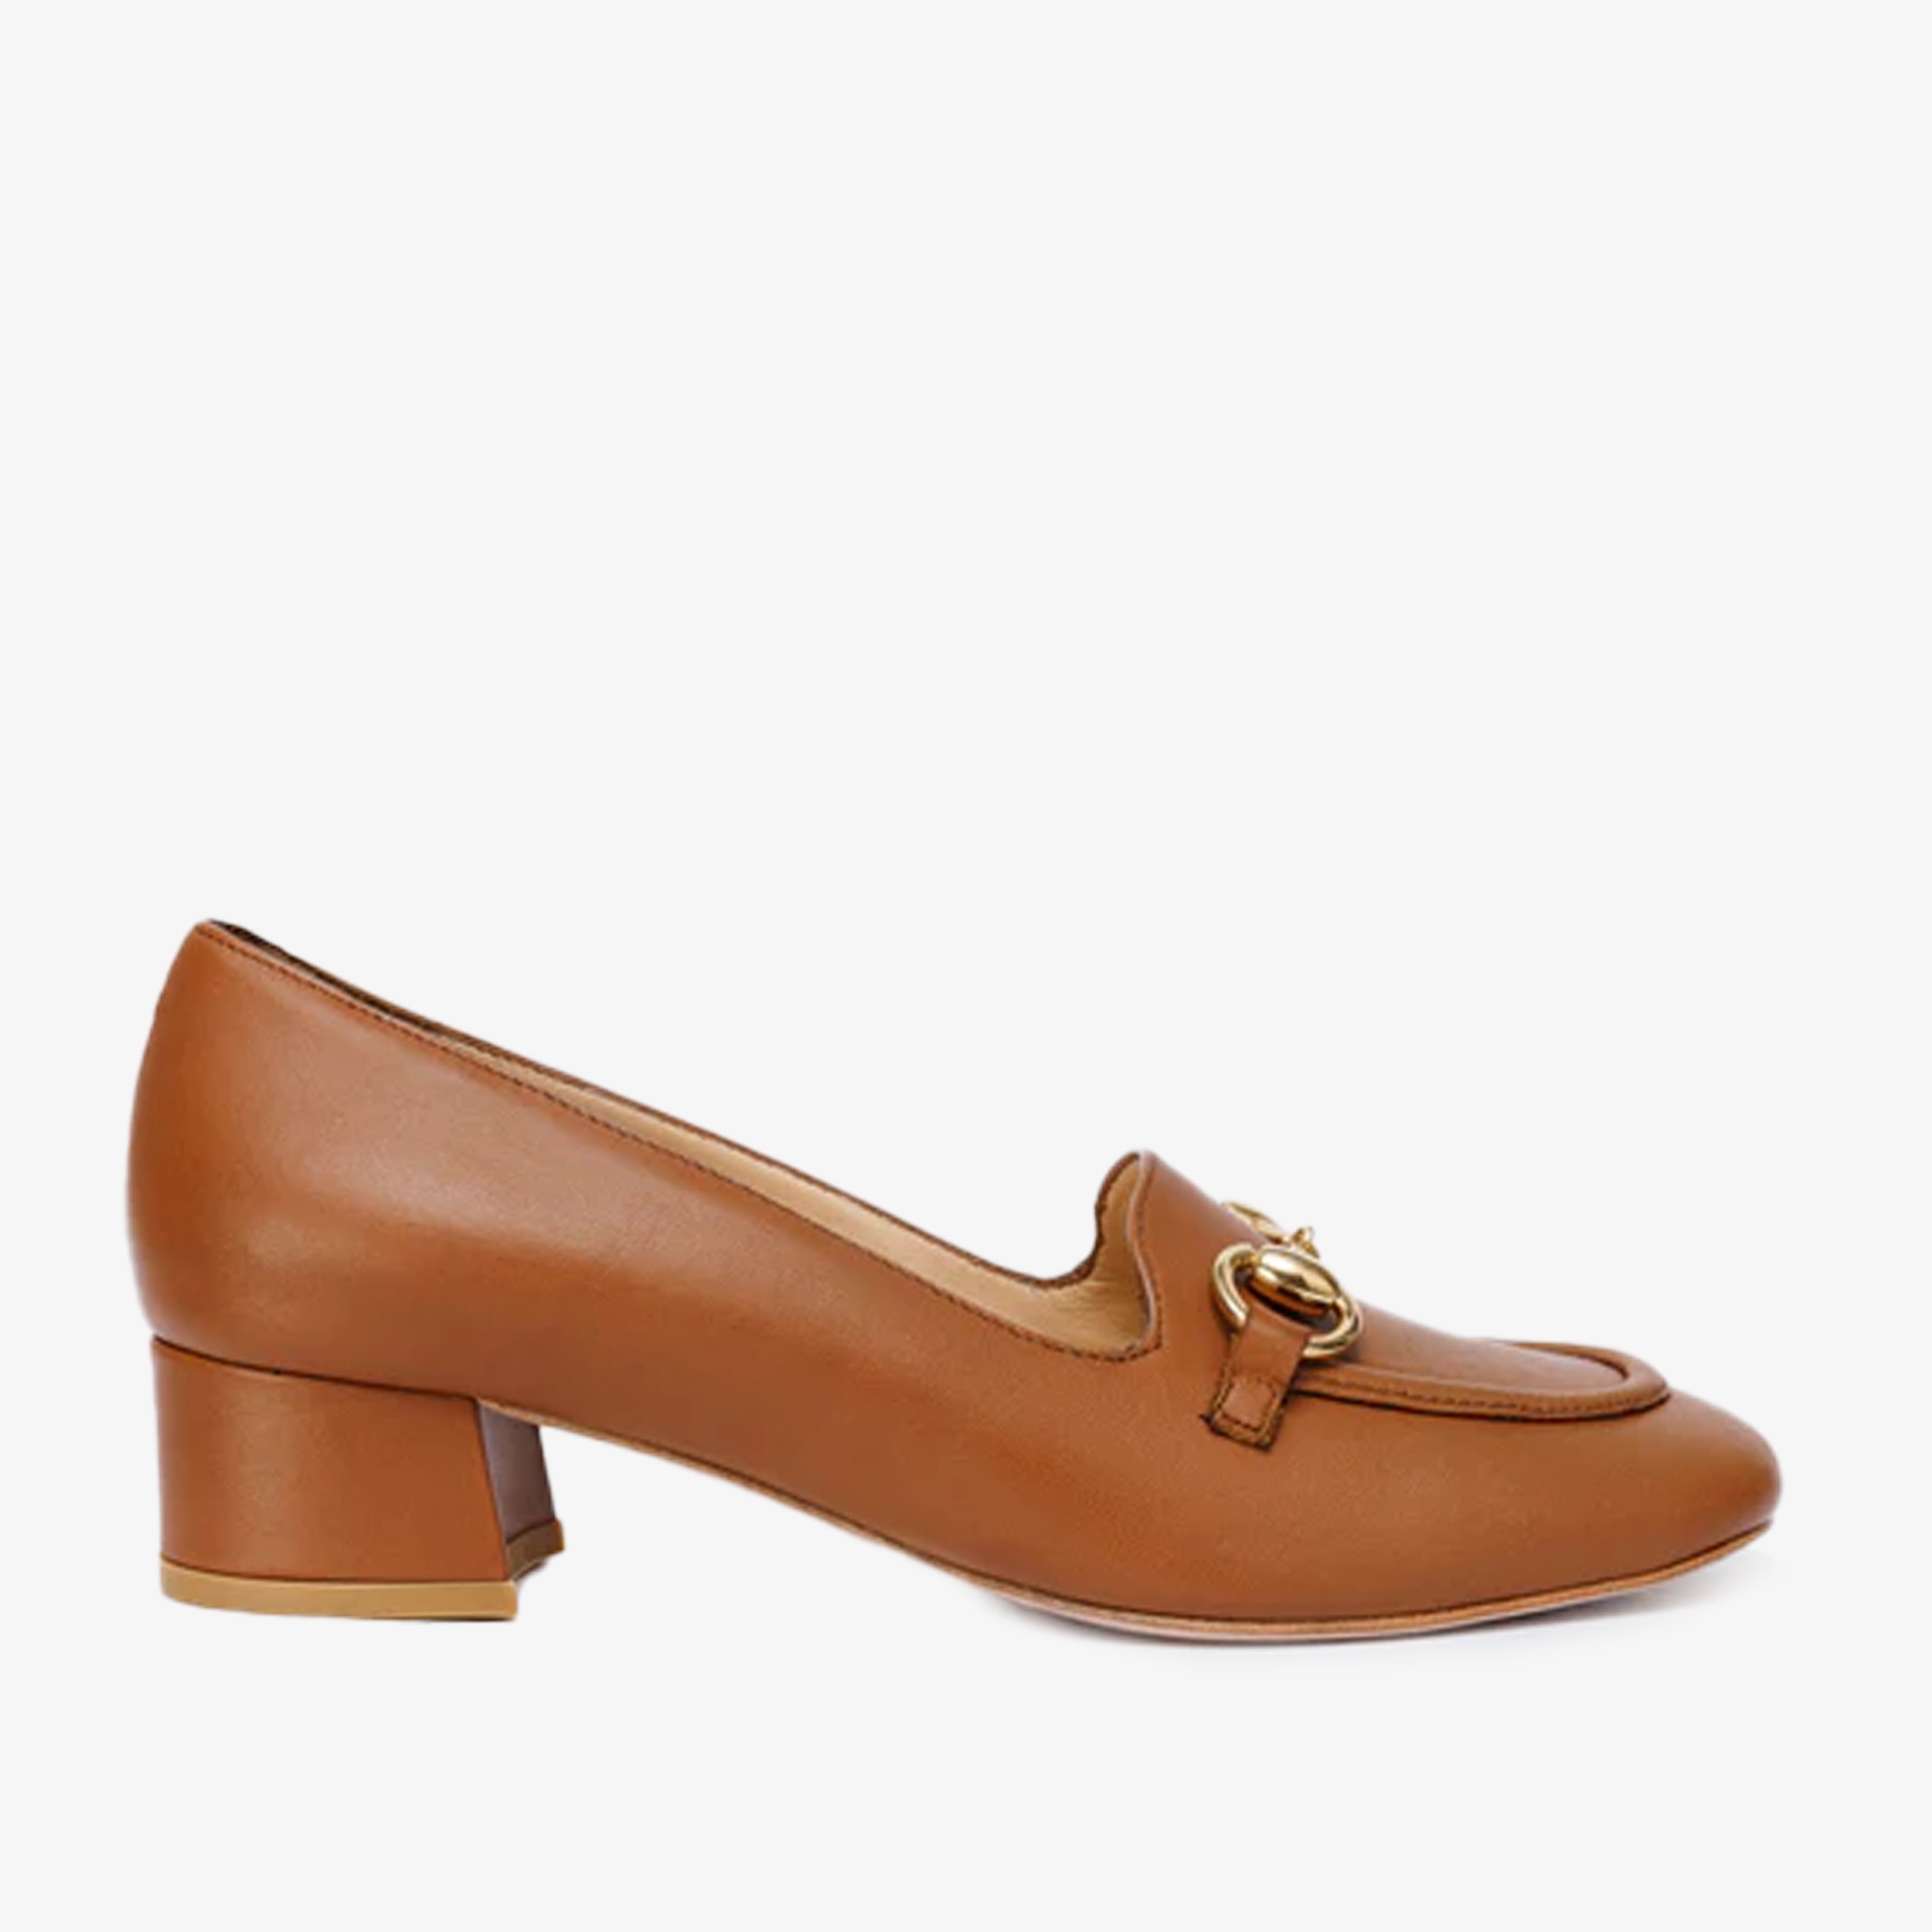 The Delhi Brown Leather Block Heel Pump Women Shoe